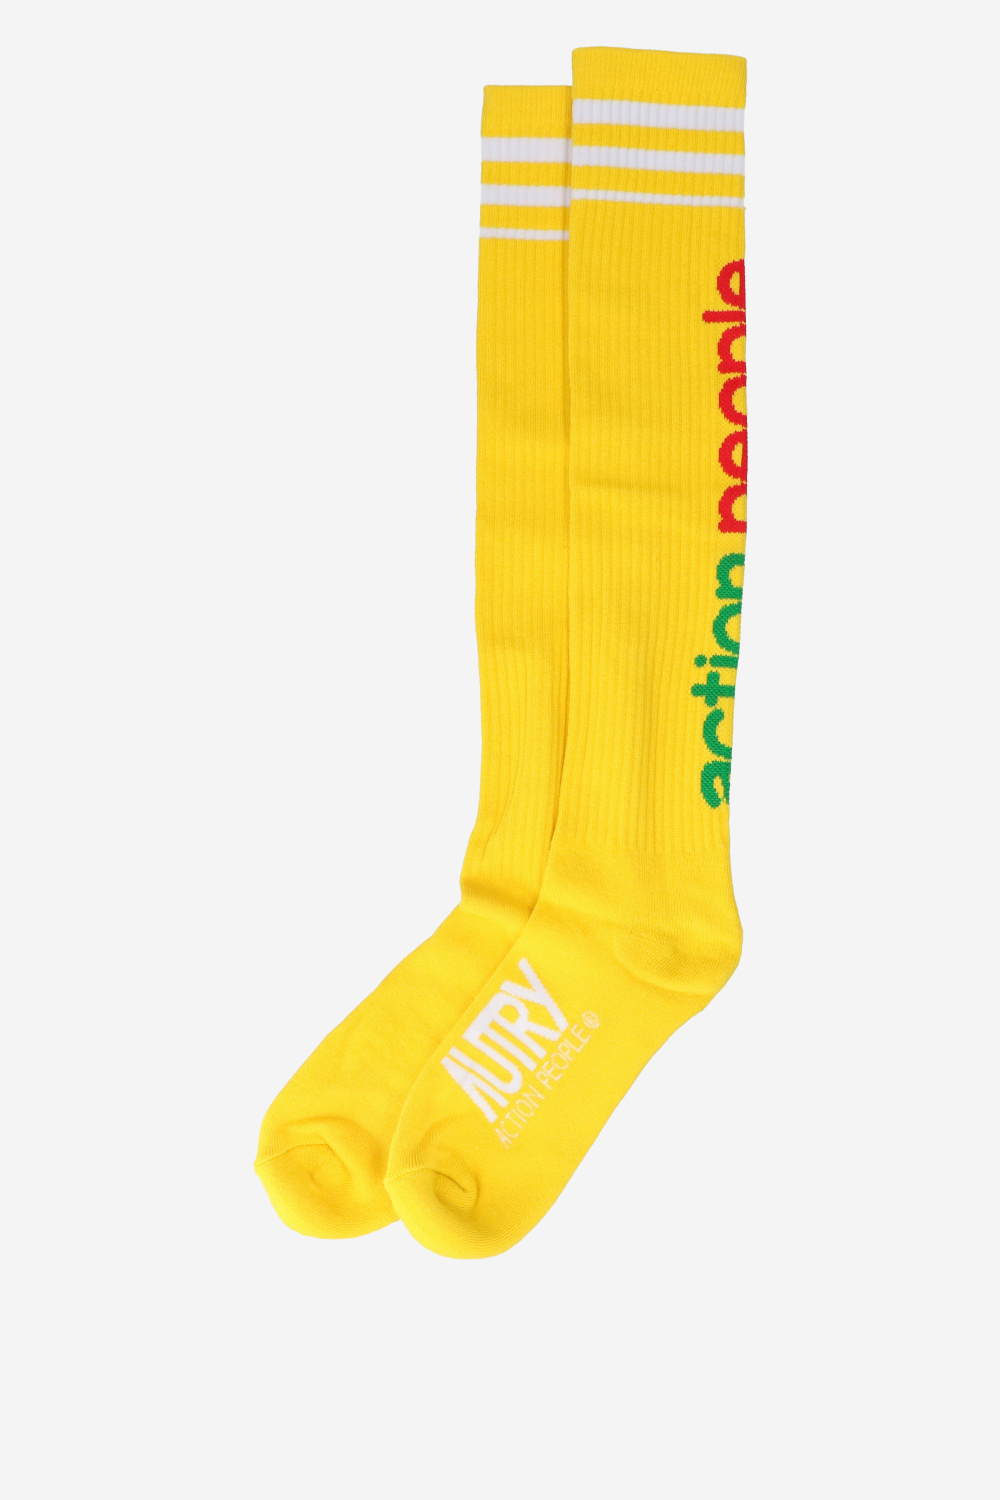 Autry Socks Yellow